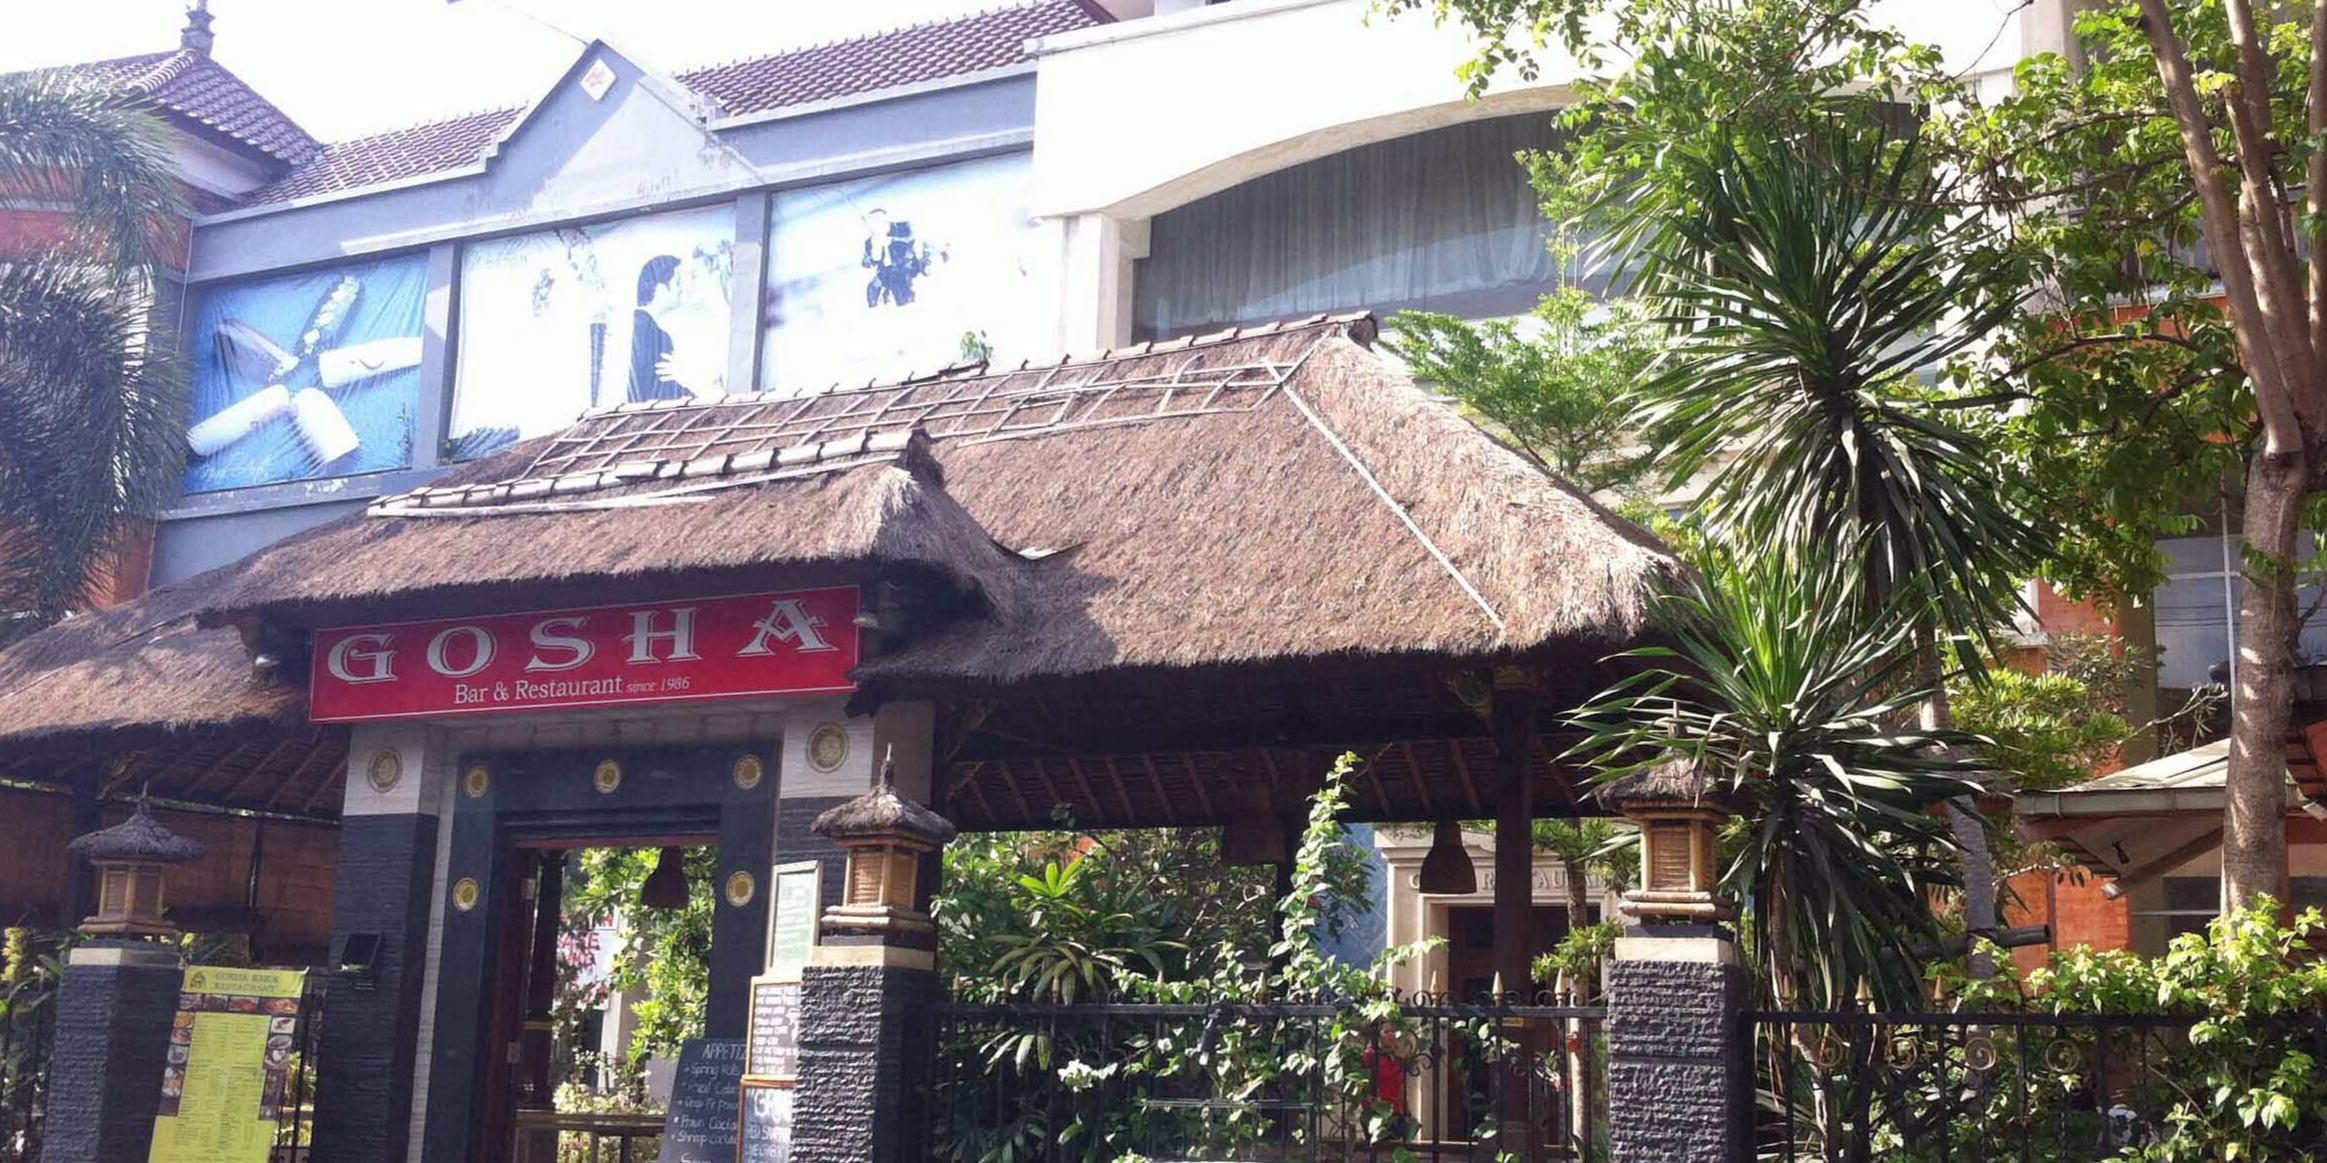 Gosha Bar & Restaurant